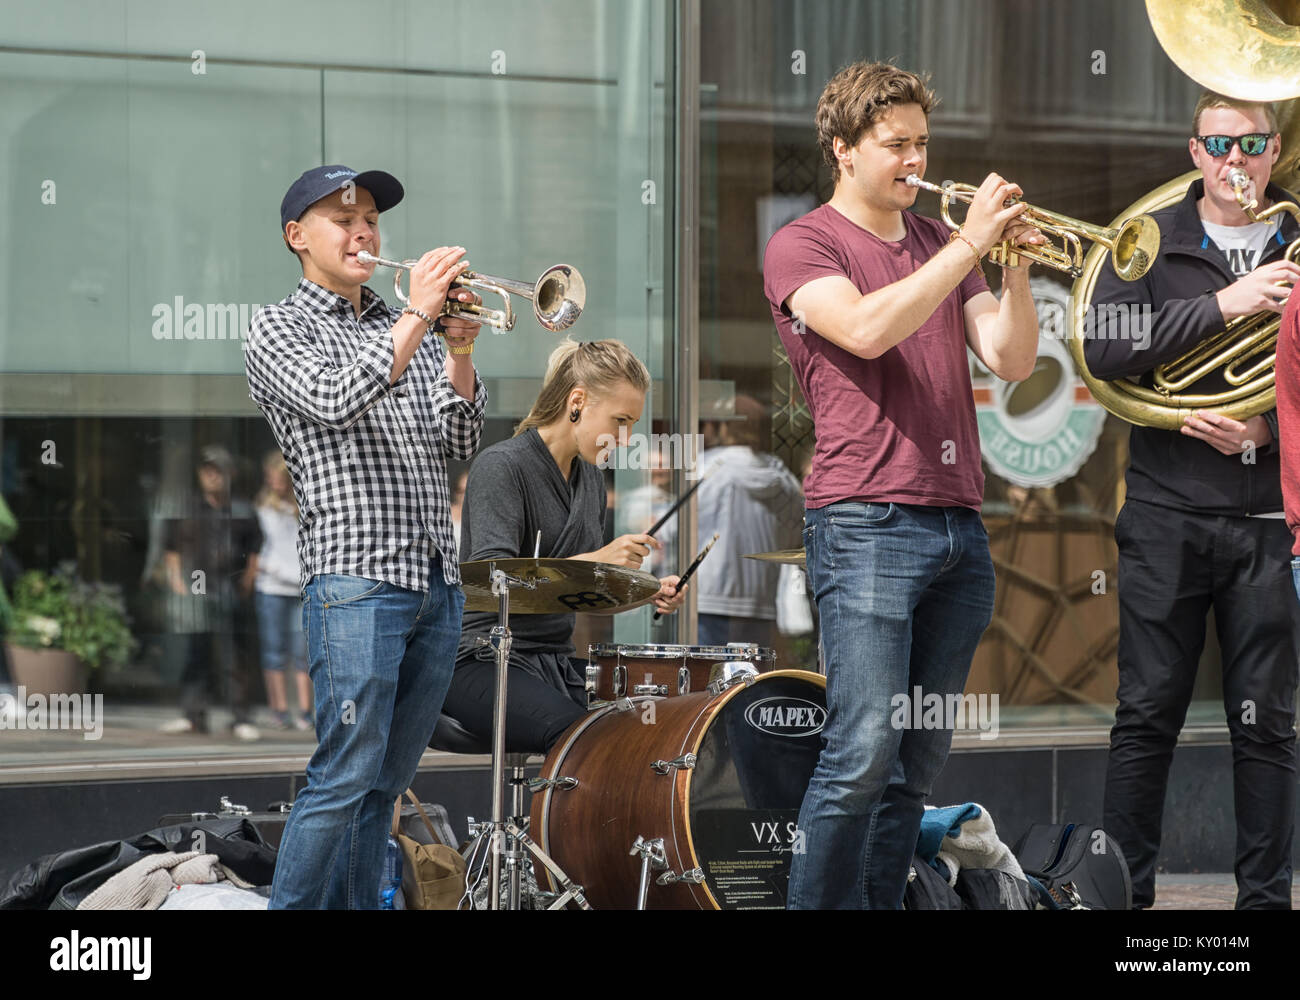 La musique de rue - jeunes musiciens donnent un concert dans le centre de Helsinki Banque D'Images